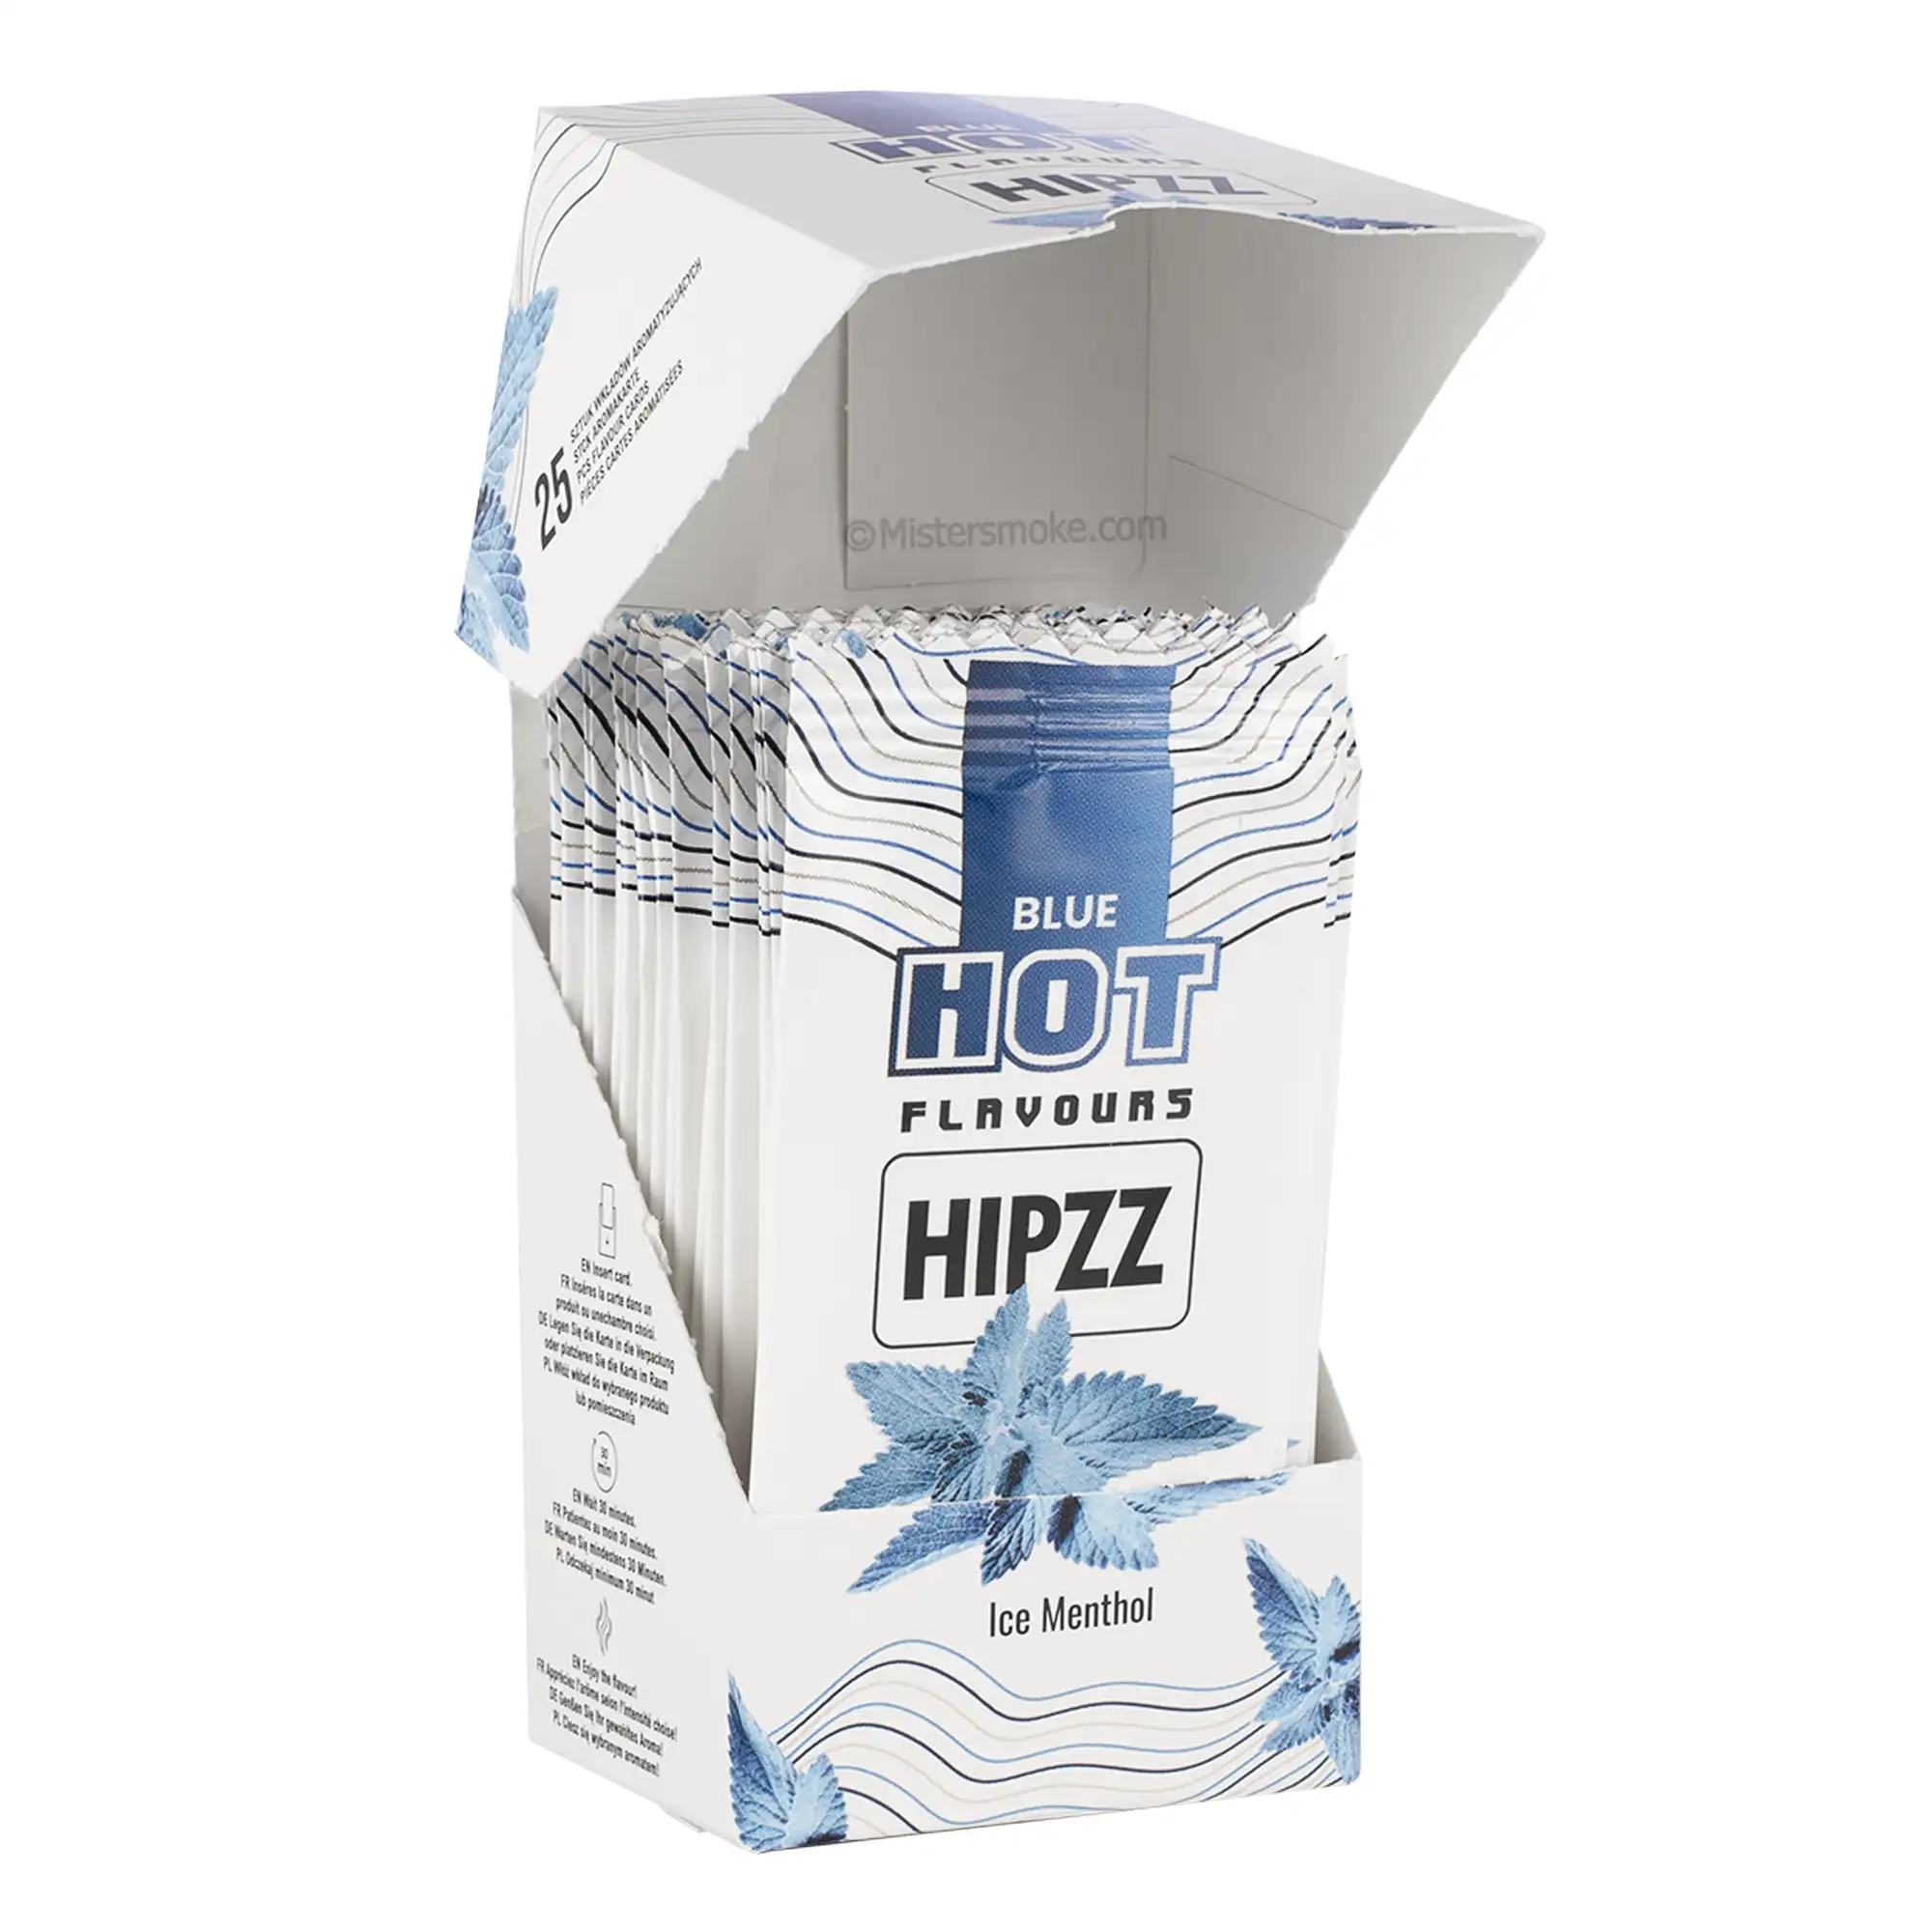 Carte aromatique pour cigarette HipZZ - Ice menthol - Mistersmoke